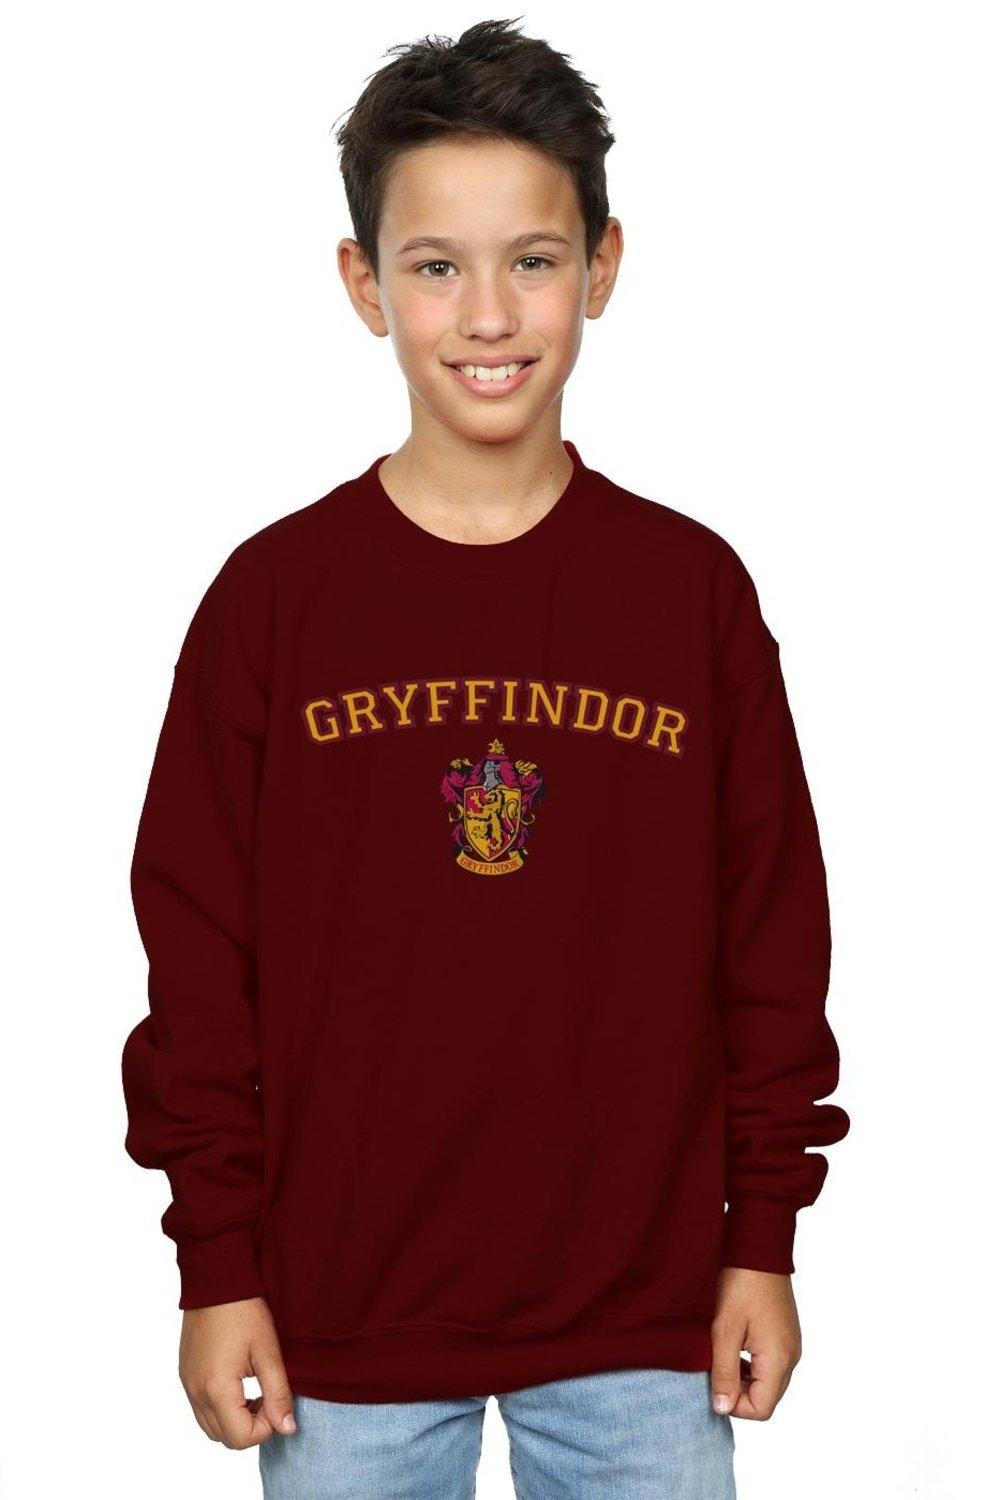 Gryffindor Crest Sweatshirt